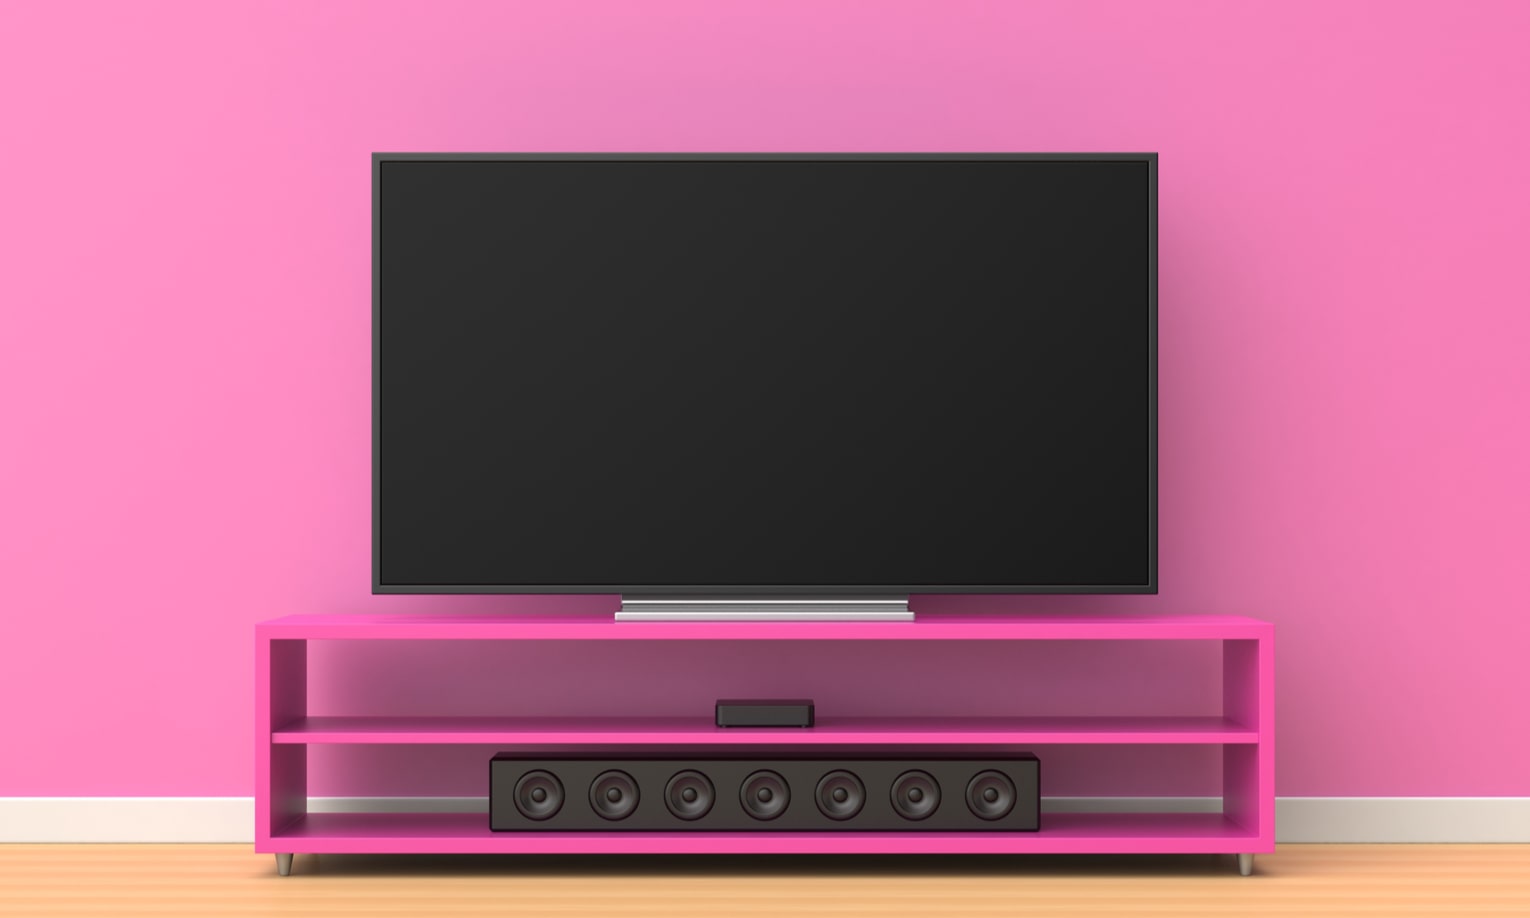 динамики системы soundbar на розовом фоне